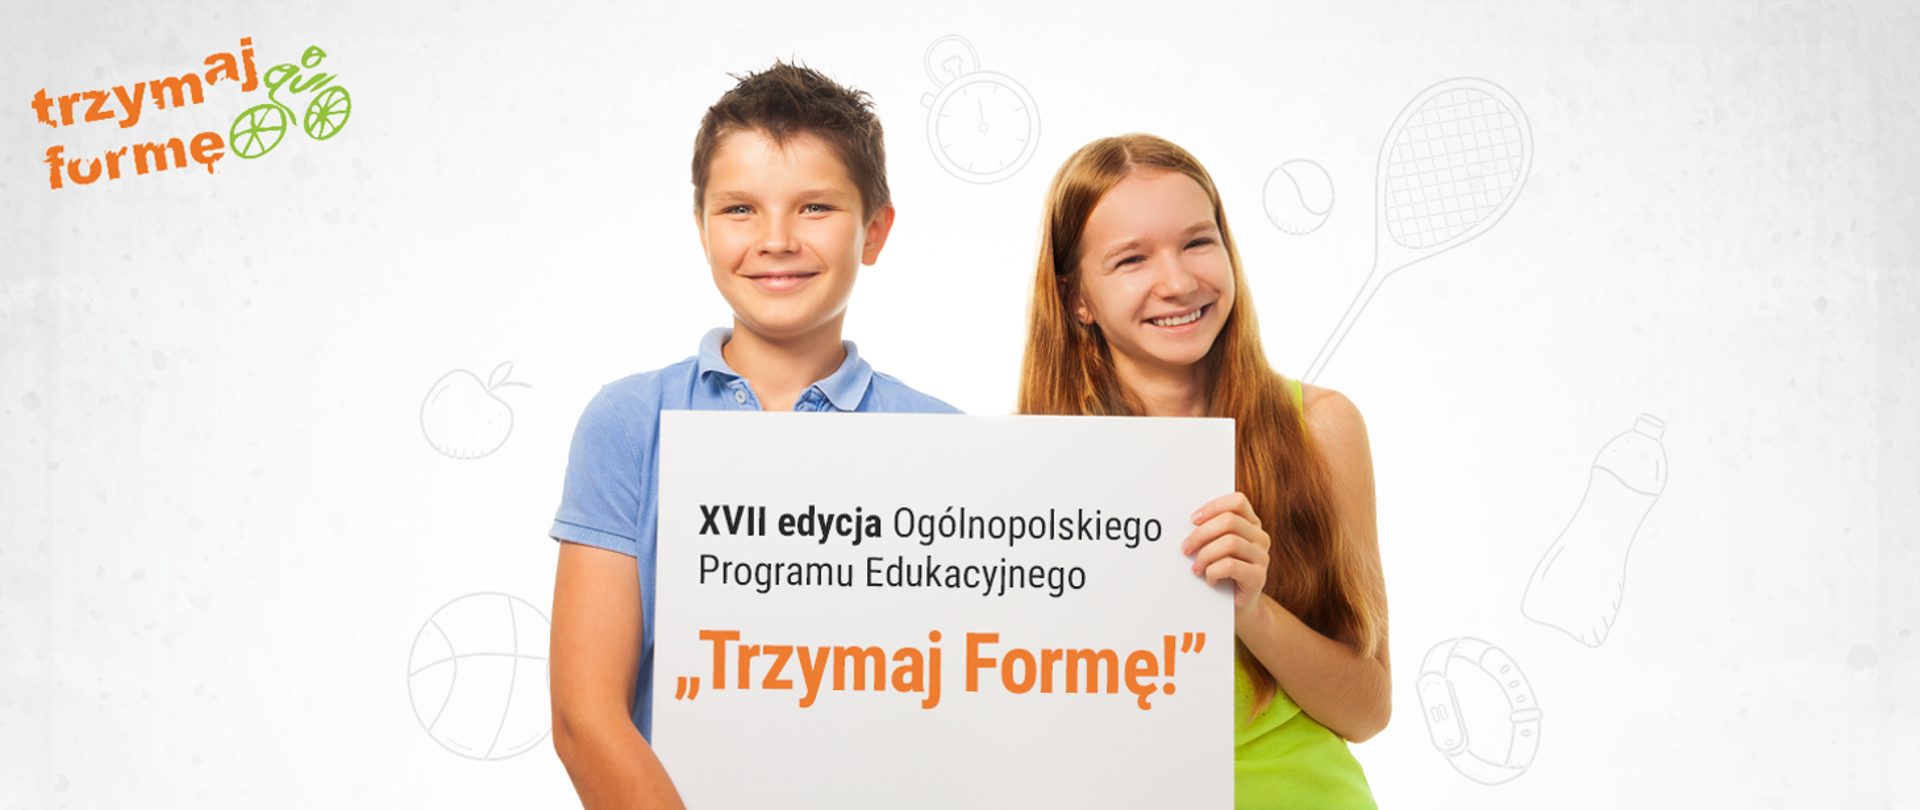 Chłopiec i dziewczynka trzymający kartkę z napisem "XVII edycja Ogólnopolskiego Programu Edukacyjnego "Trzymaj Formę!